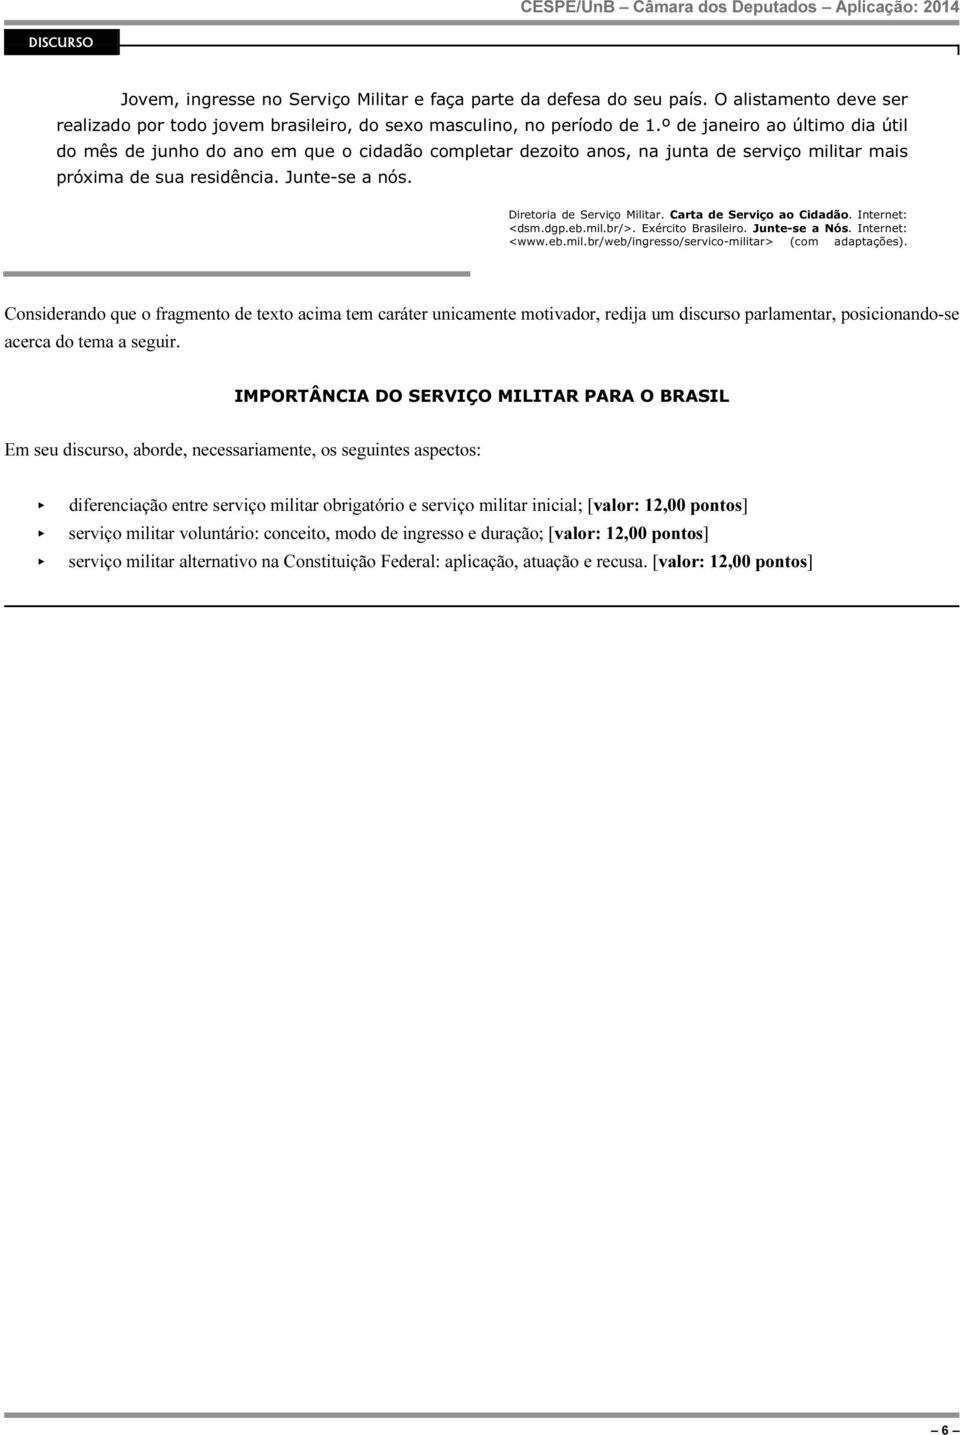 Diretoria de Serviço Militar. Carta de Serviço ao Cidadão. Internet: <dsm.dgp.eb.mil.br/>. Exército Brasileiro. Junte-se a Nós. Internet: <www.eb.mil.br/web/ingresso/servico-militar> (com adaptações).